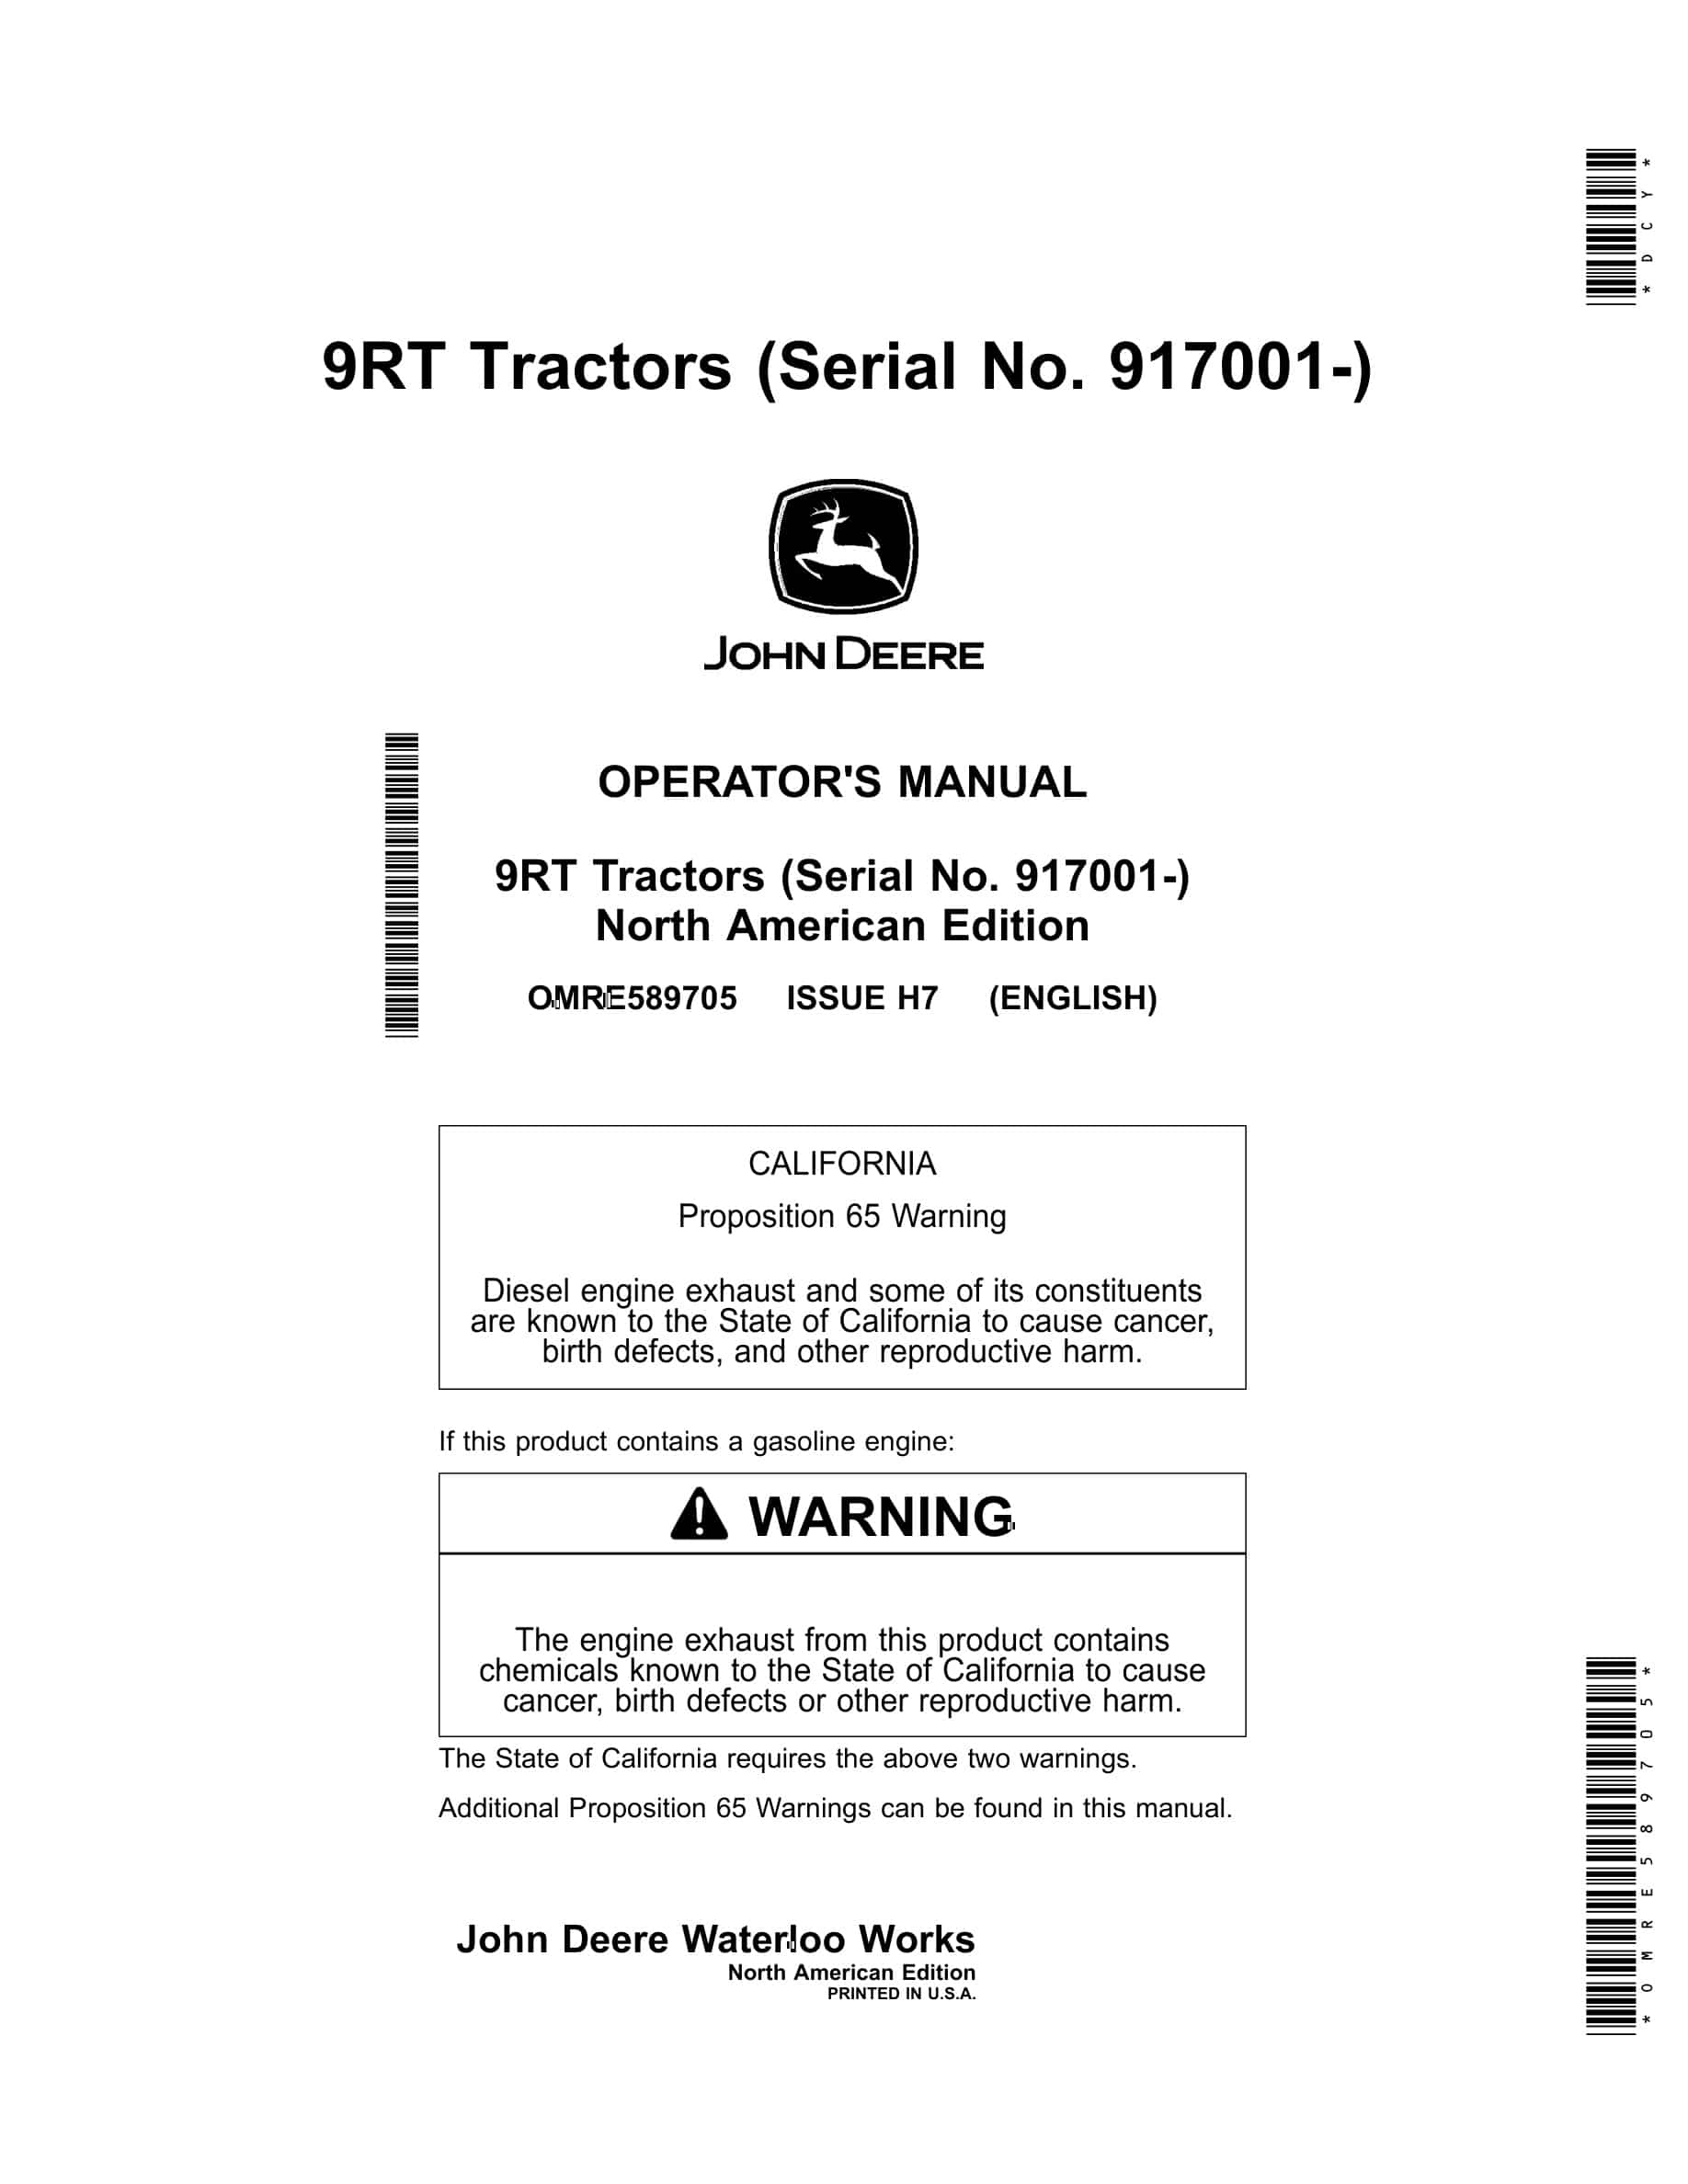 John Deere 9RT Tractor Operator Manual OMRE589705-1